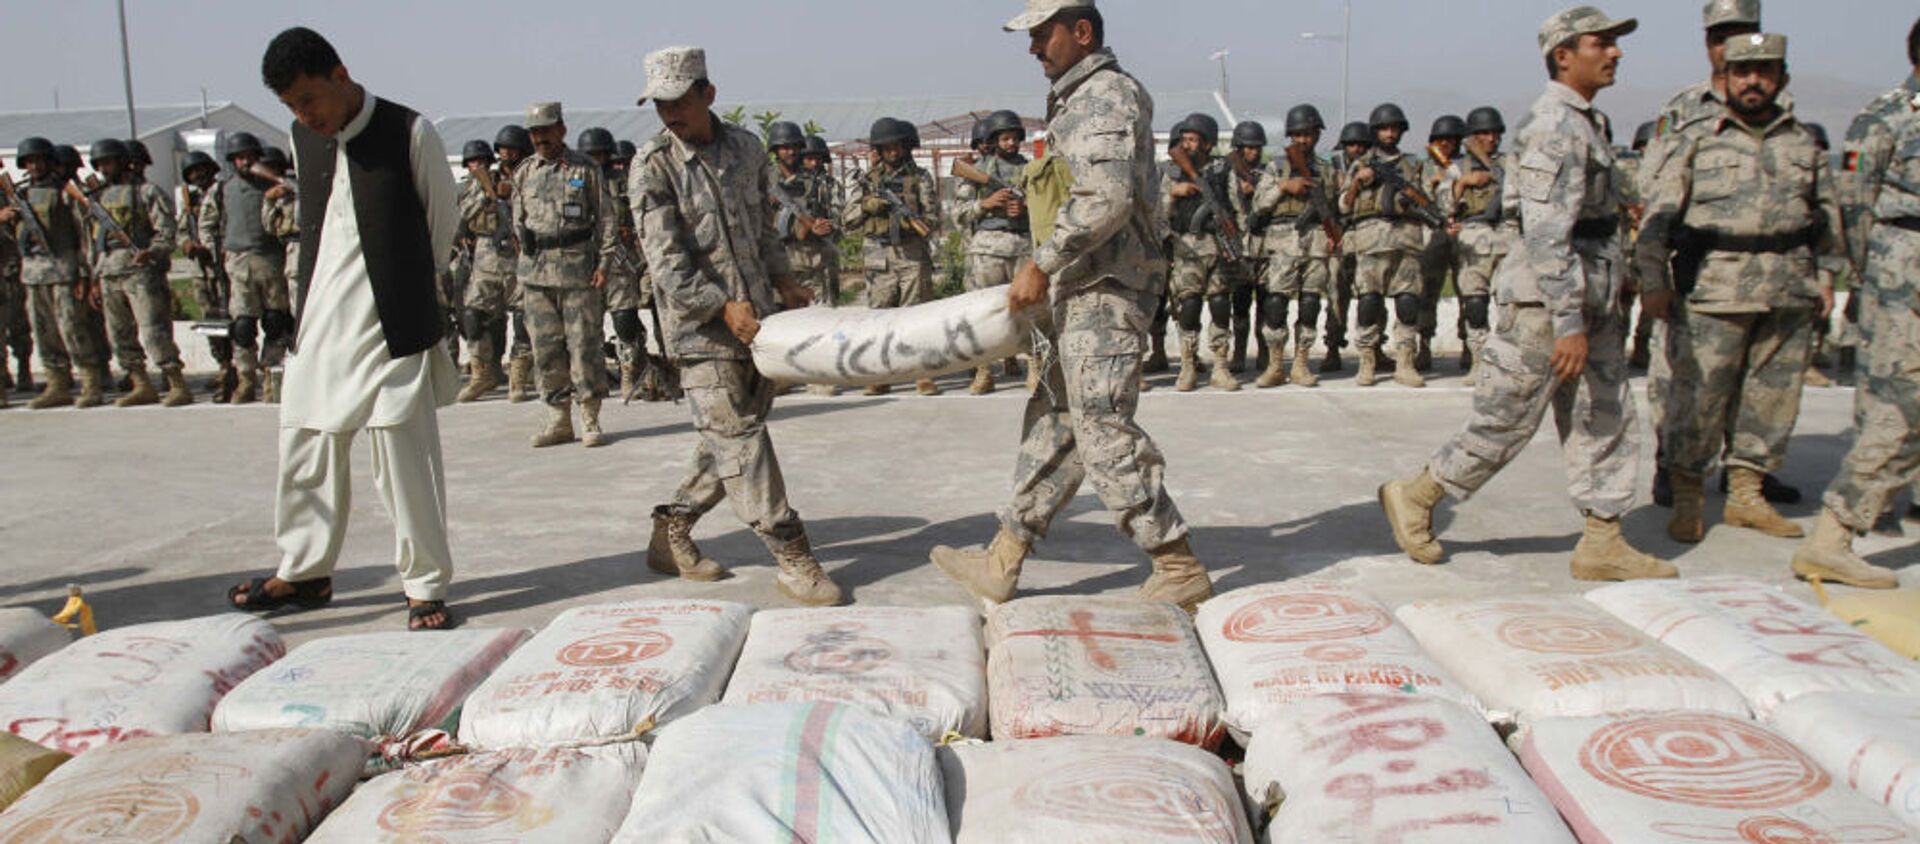 Các nhân viên Cảnh sát Biên giới Afghanistan mang một túi băm đến phần còn lại của số ma túy bị thu giữ tại một đồn cảnh sát ở Jalalabad, Afghanistan. - Sputnik Việt Nam, 1920, 03.08.2021